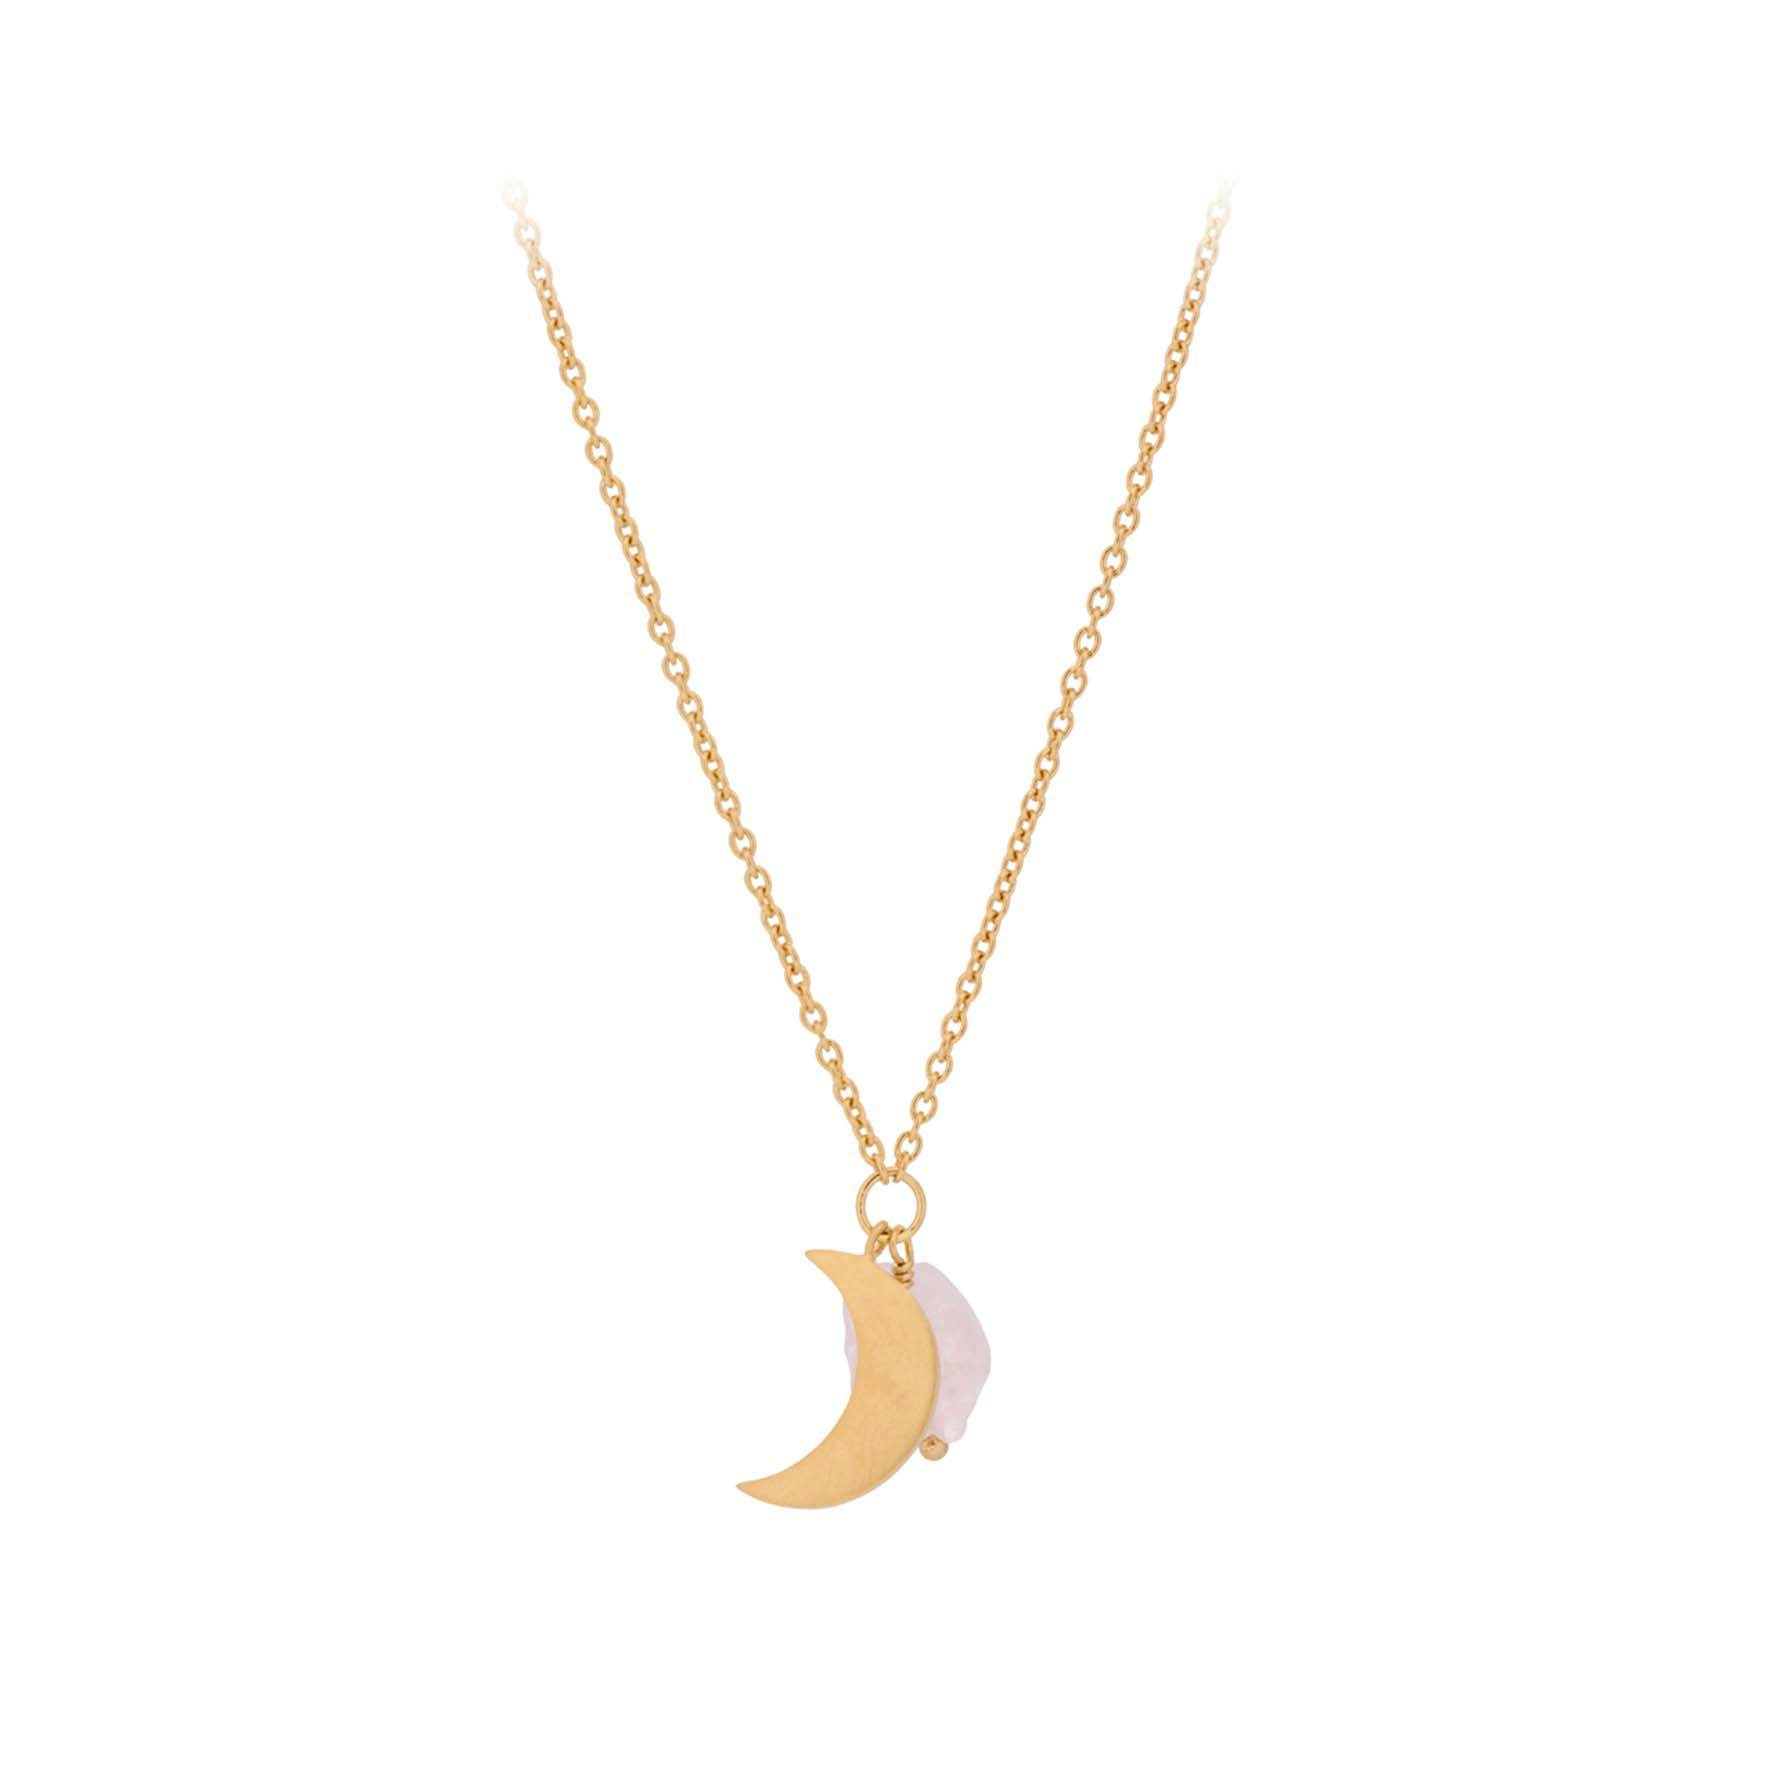 Lunar Orb Necklace von Pernille Corydon in Vergoldet-Silber Sterling 925